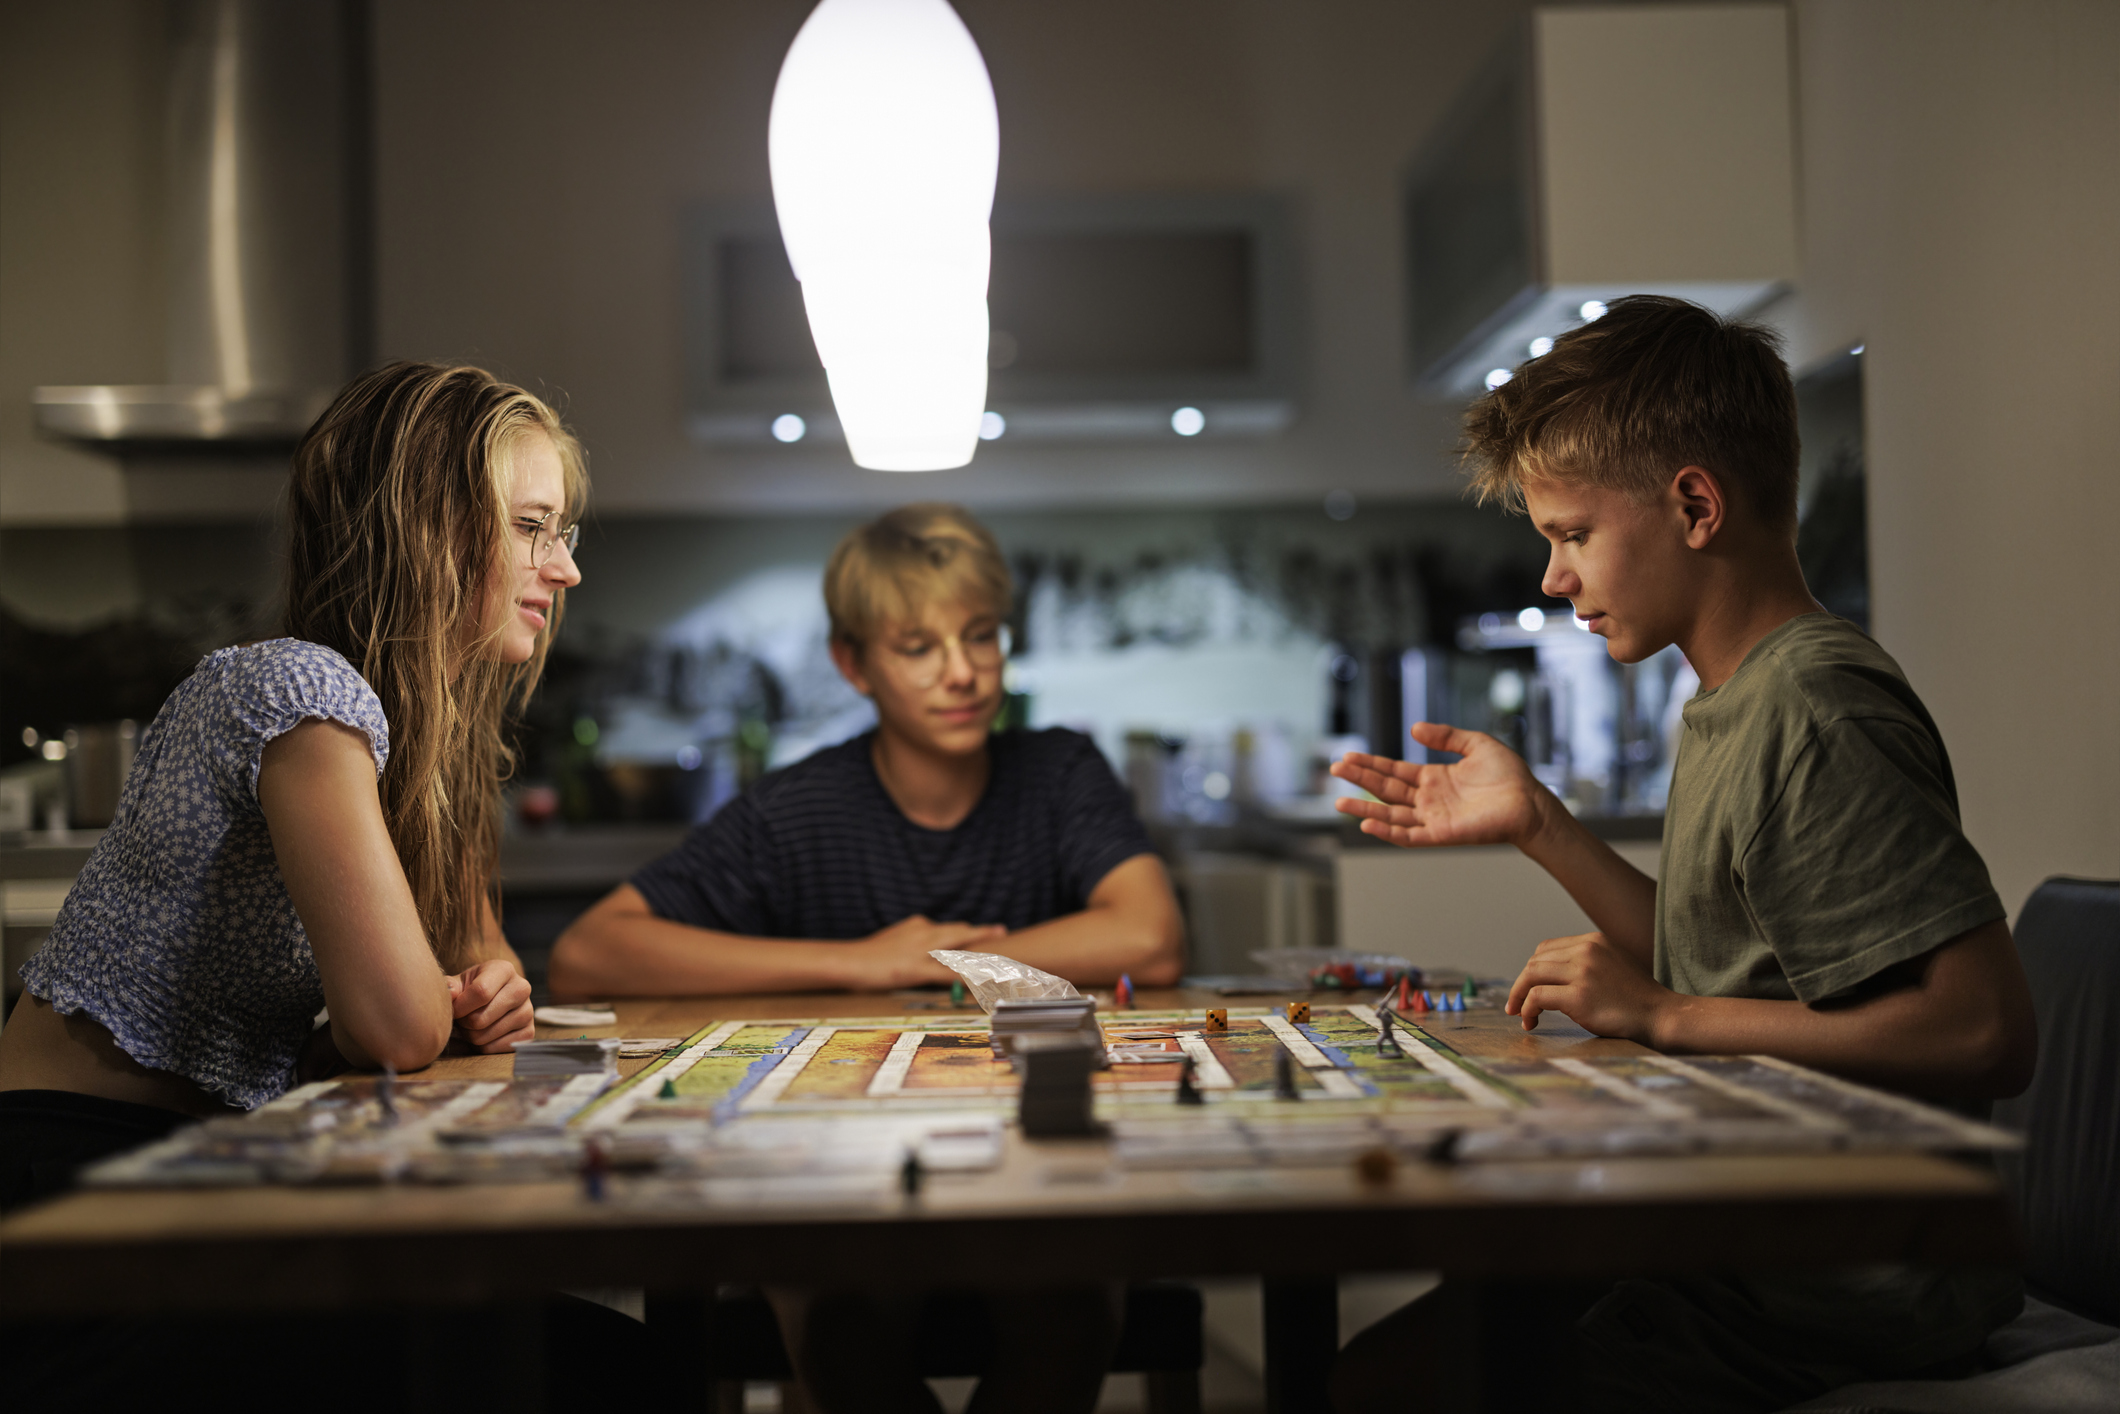 Các trò chơi trên bàn cờ là cách hay để thu hút sự chú ý của trẻ nhỏ và dạy các em những kỹ năng như tư duy chiến lược. (Ảnh: Imgorthand/Getty Images)